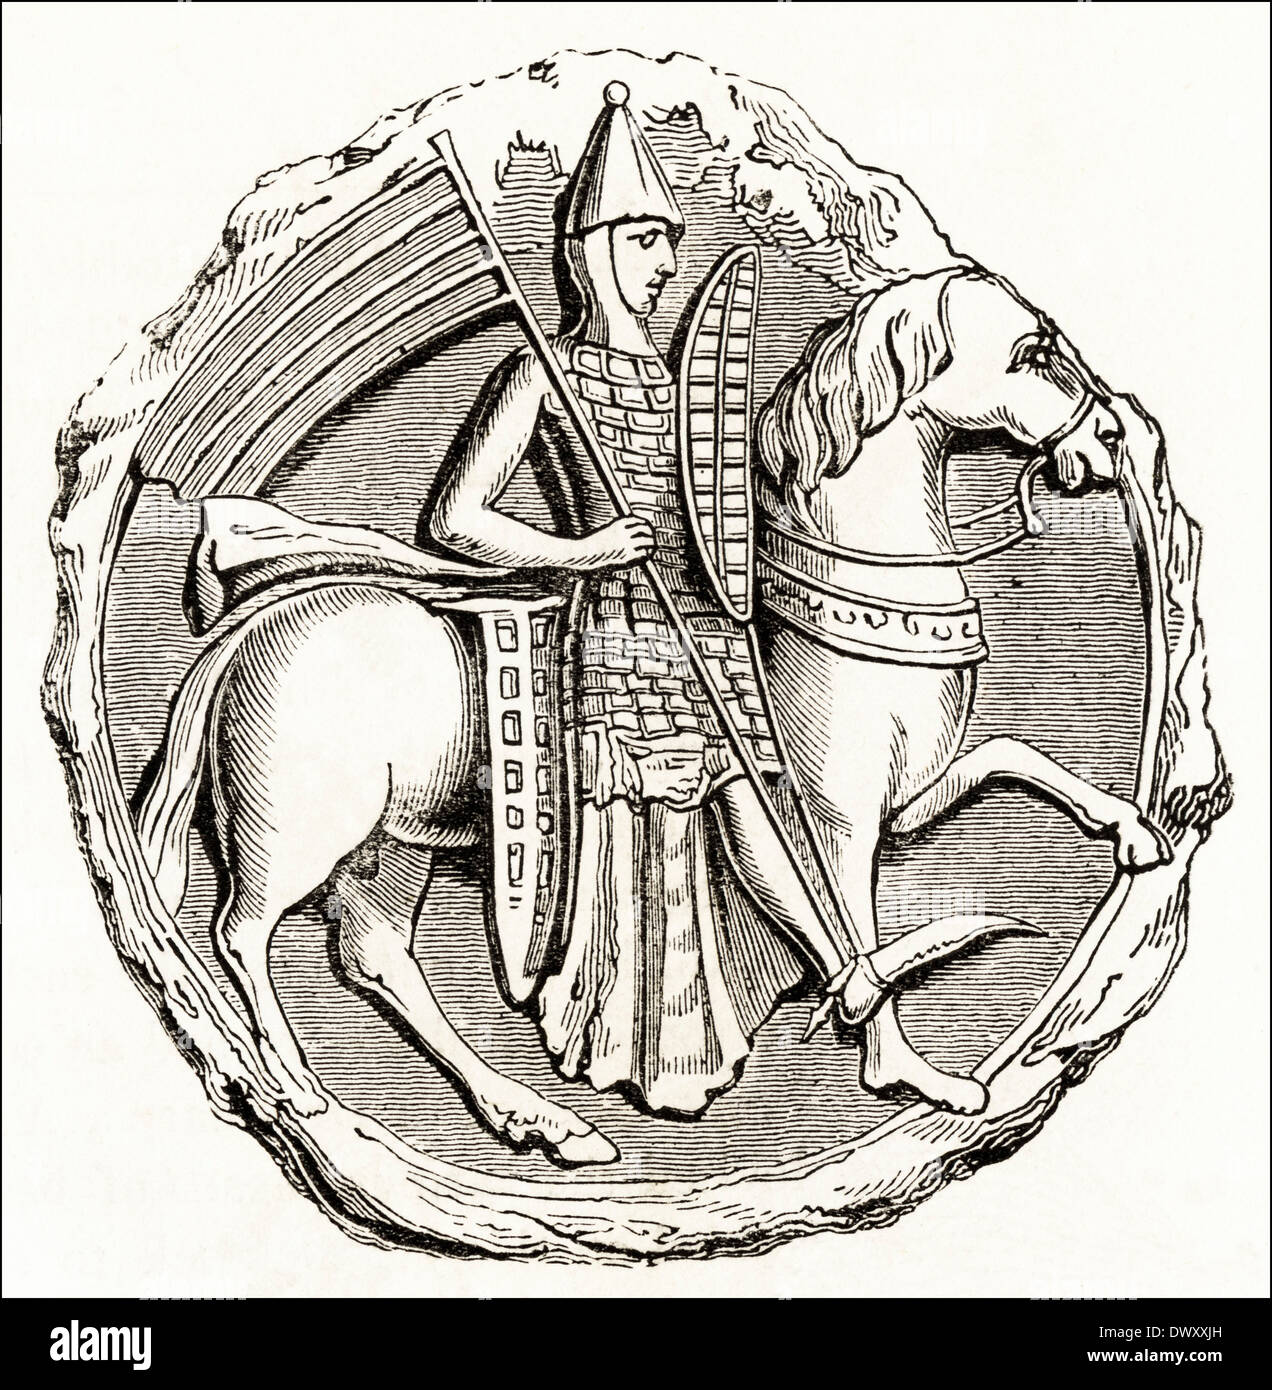 Sceau de Richard Connétable de Chester à l'heure de Stephen King de l'Angleterre du 12ème siècle. Circa 1845 gravure sur bois victorien Banque D'Images